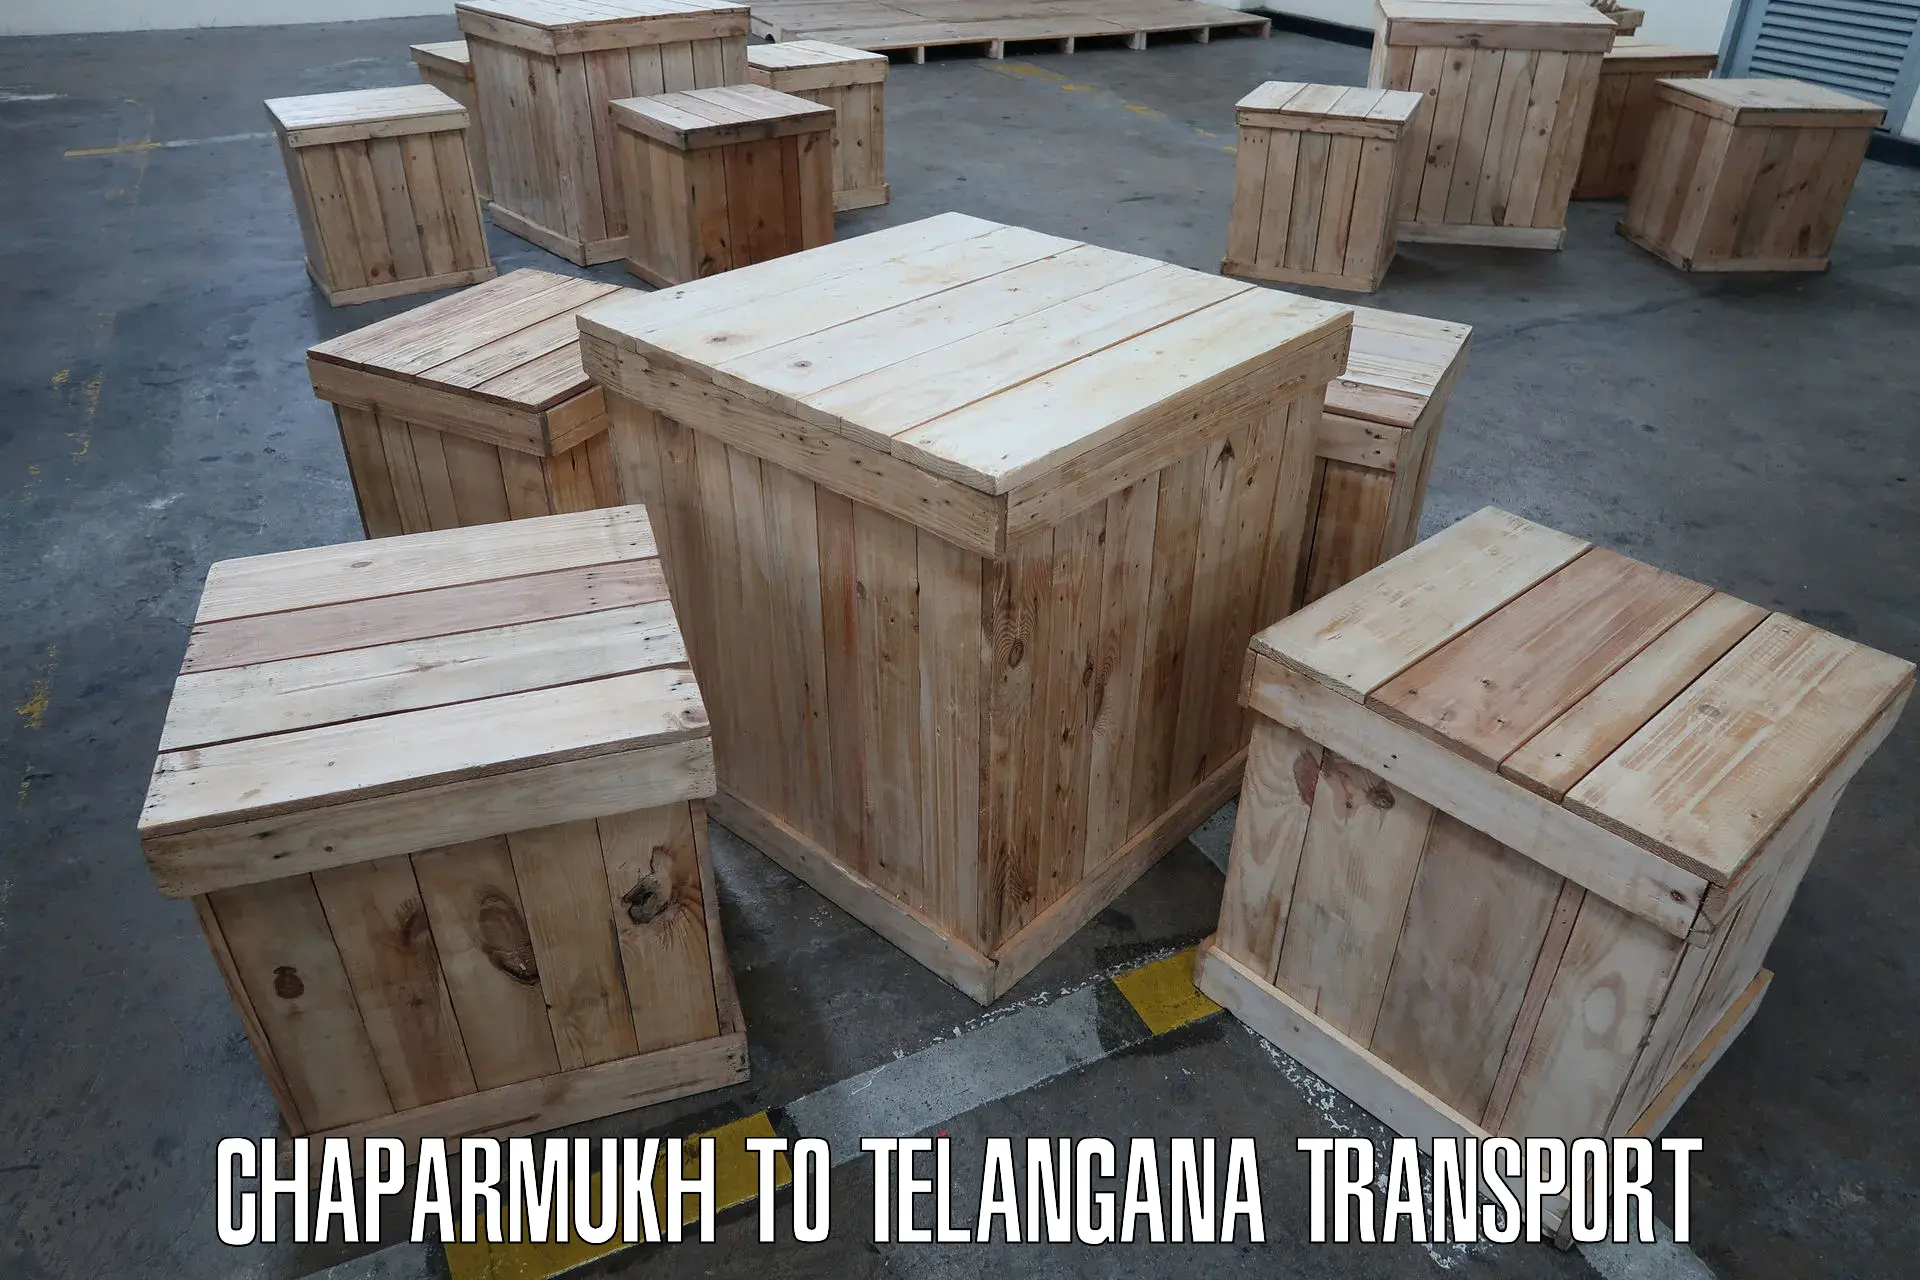 Furniture transport service Chaparmukh to Kothakota